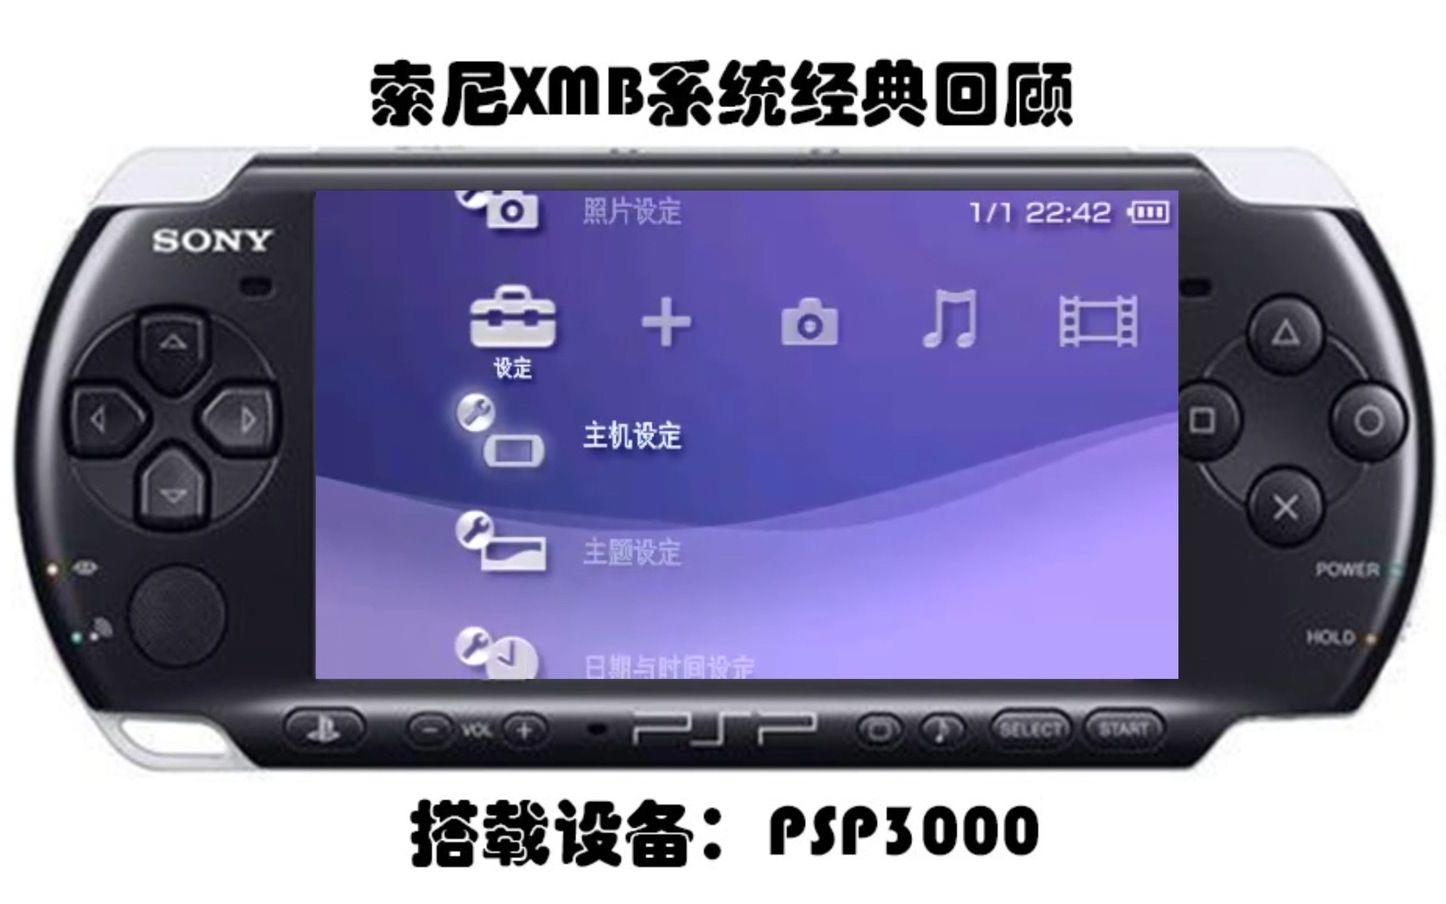 科技美学】索尼PSP3000经典XMB界面高清演示。-哔哩哔哩